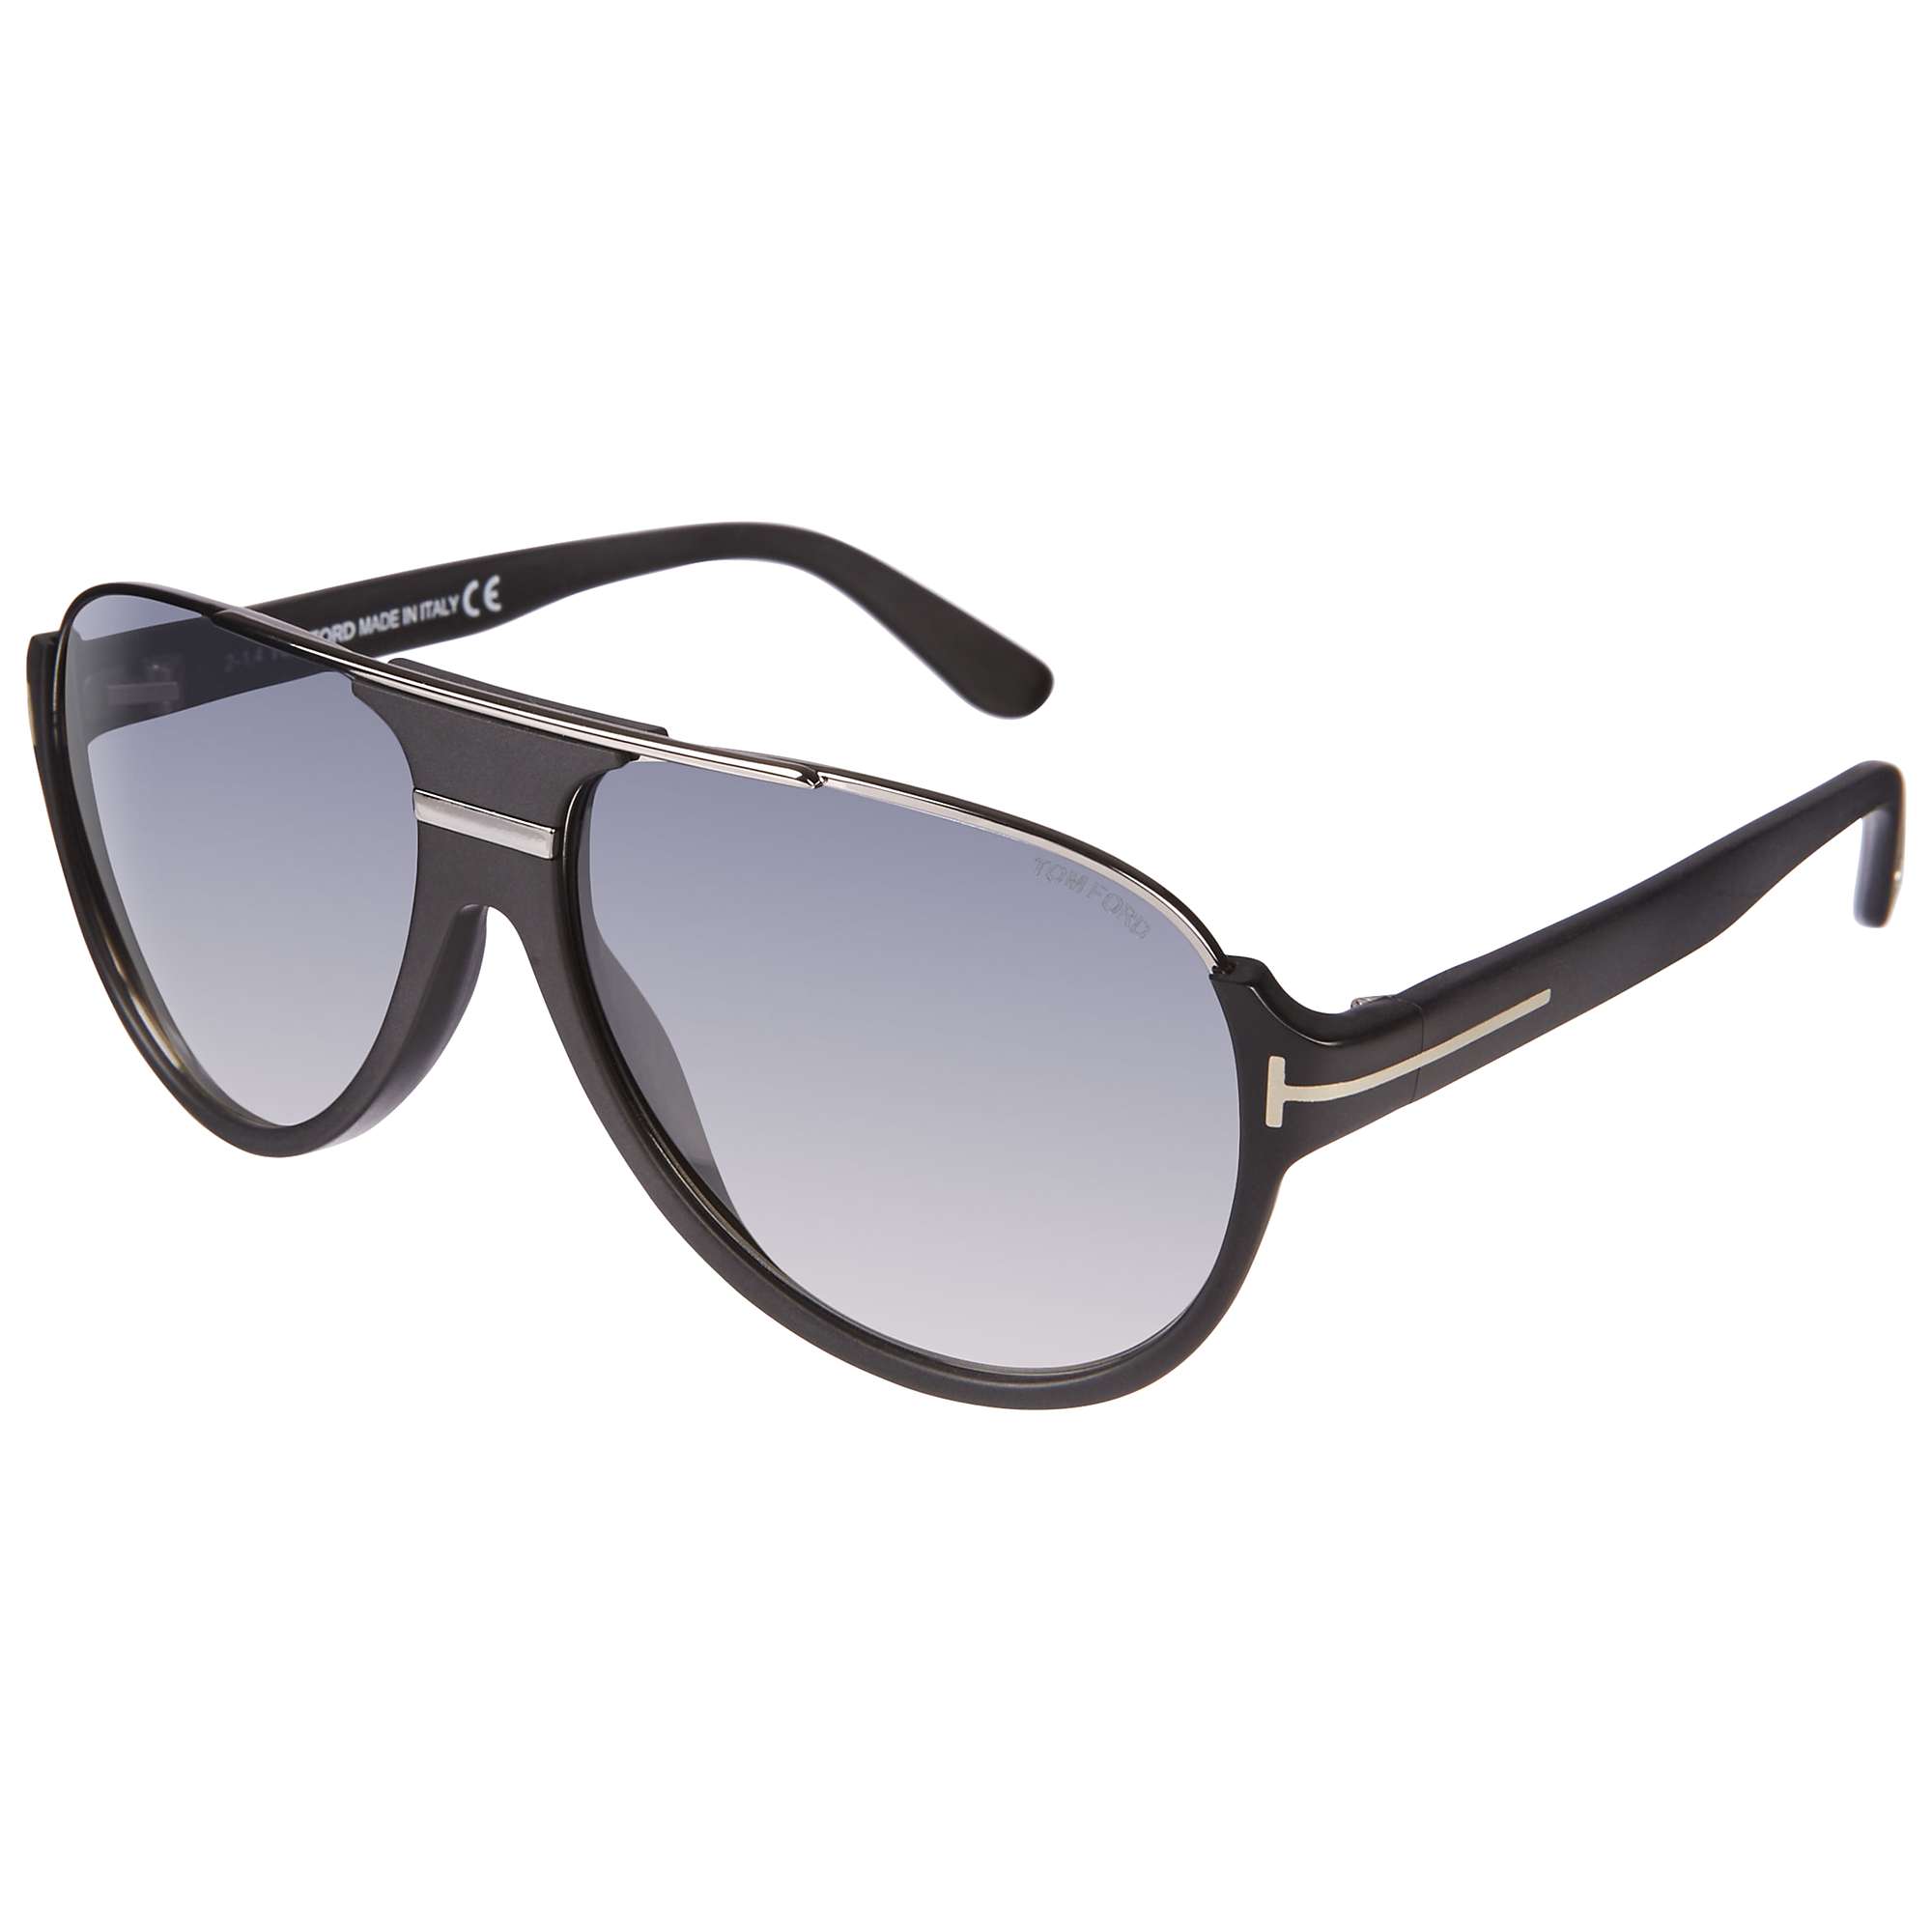 Buy TOM FORD FT0334 Men's Dimitry Sunglasses, Black/Light Blue Online at johnlewis.com